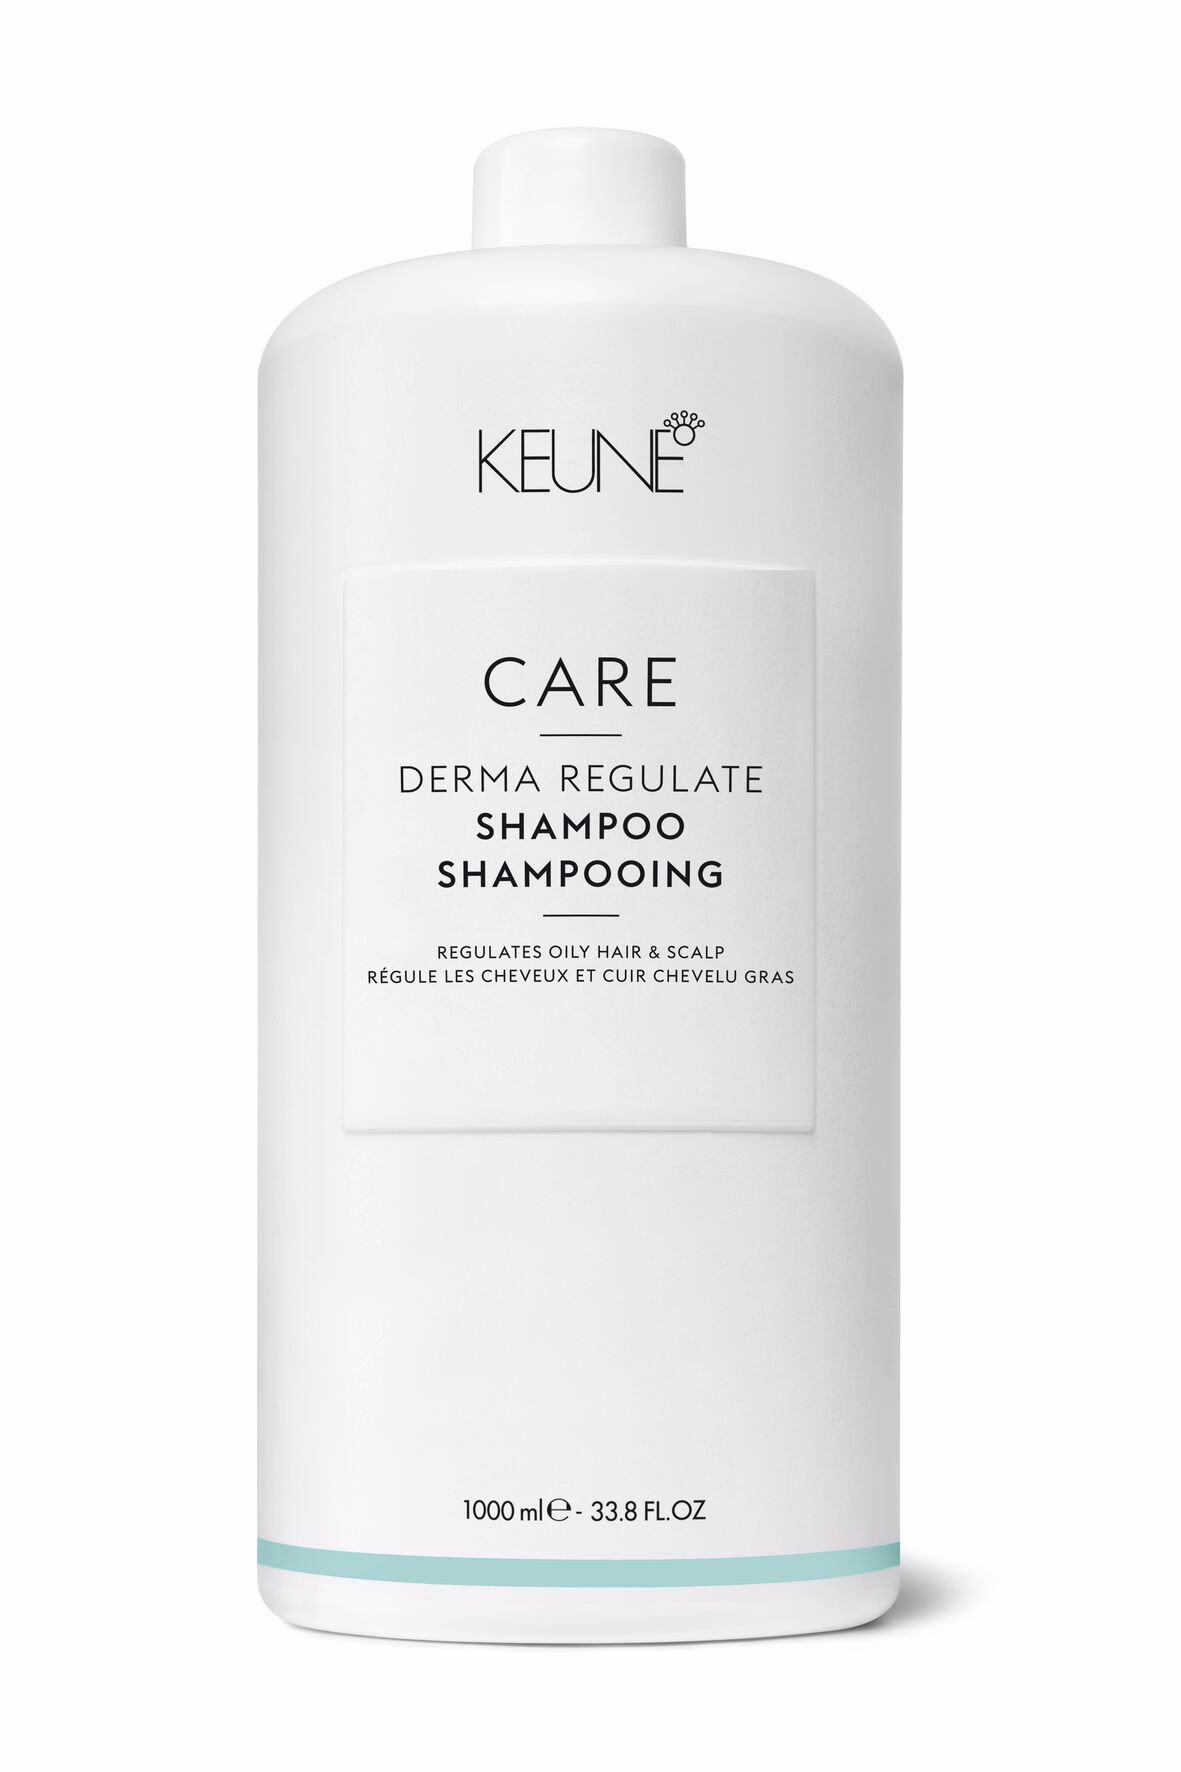 Découvrez notre Shampooing Derma Regulate - sans pellicules et efficace pour le nettoyage des cheveux. Sans silicone, apaise le cuir chevelu, procure une sensation de fraîcheur doux.